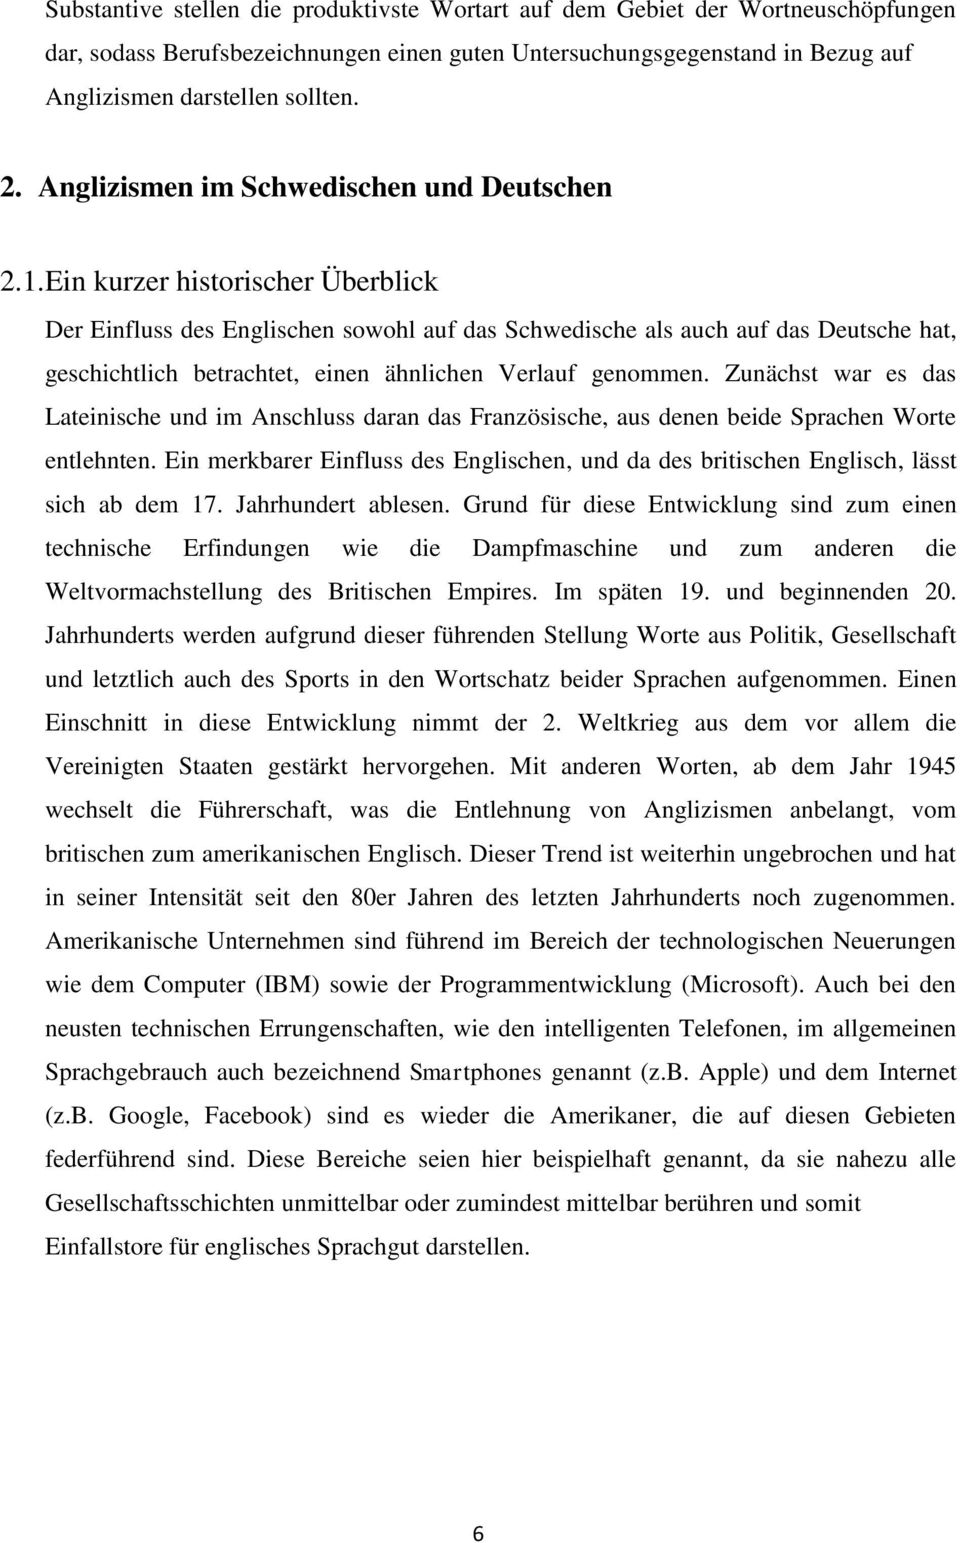 Ein kurzer historischer Überblick Der Einfluss des Englischen sowohl auf das Schwedische als auch auf das Deutsche hat, geschichtlich betrachtet, einen ähnlichen Verlauf genommen.